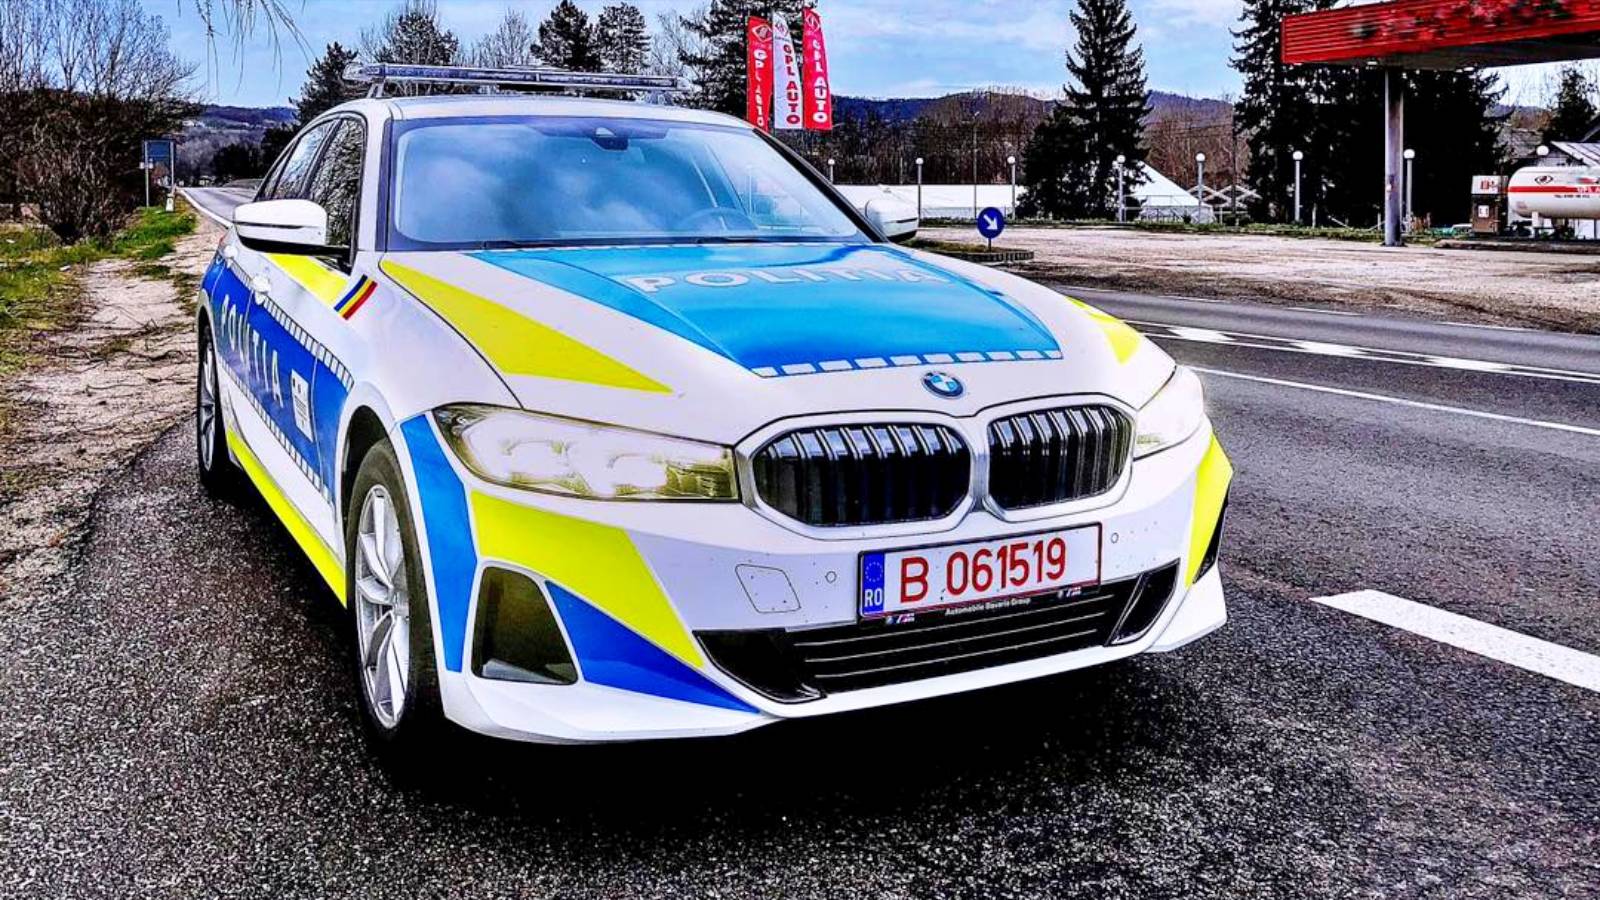 Advertencia de la policía rumana sobre conducir bajo los efectos del alcohol o las drogas